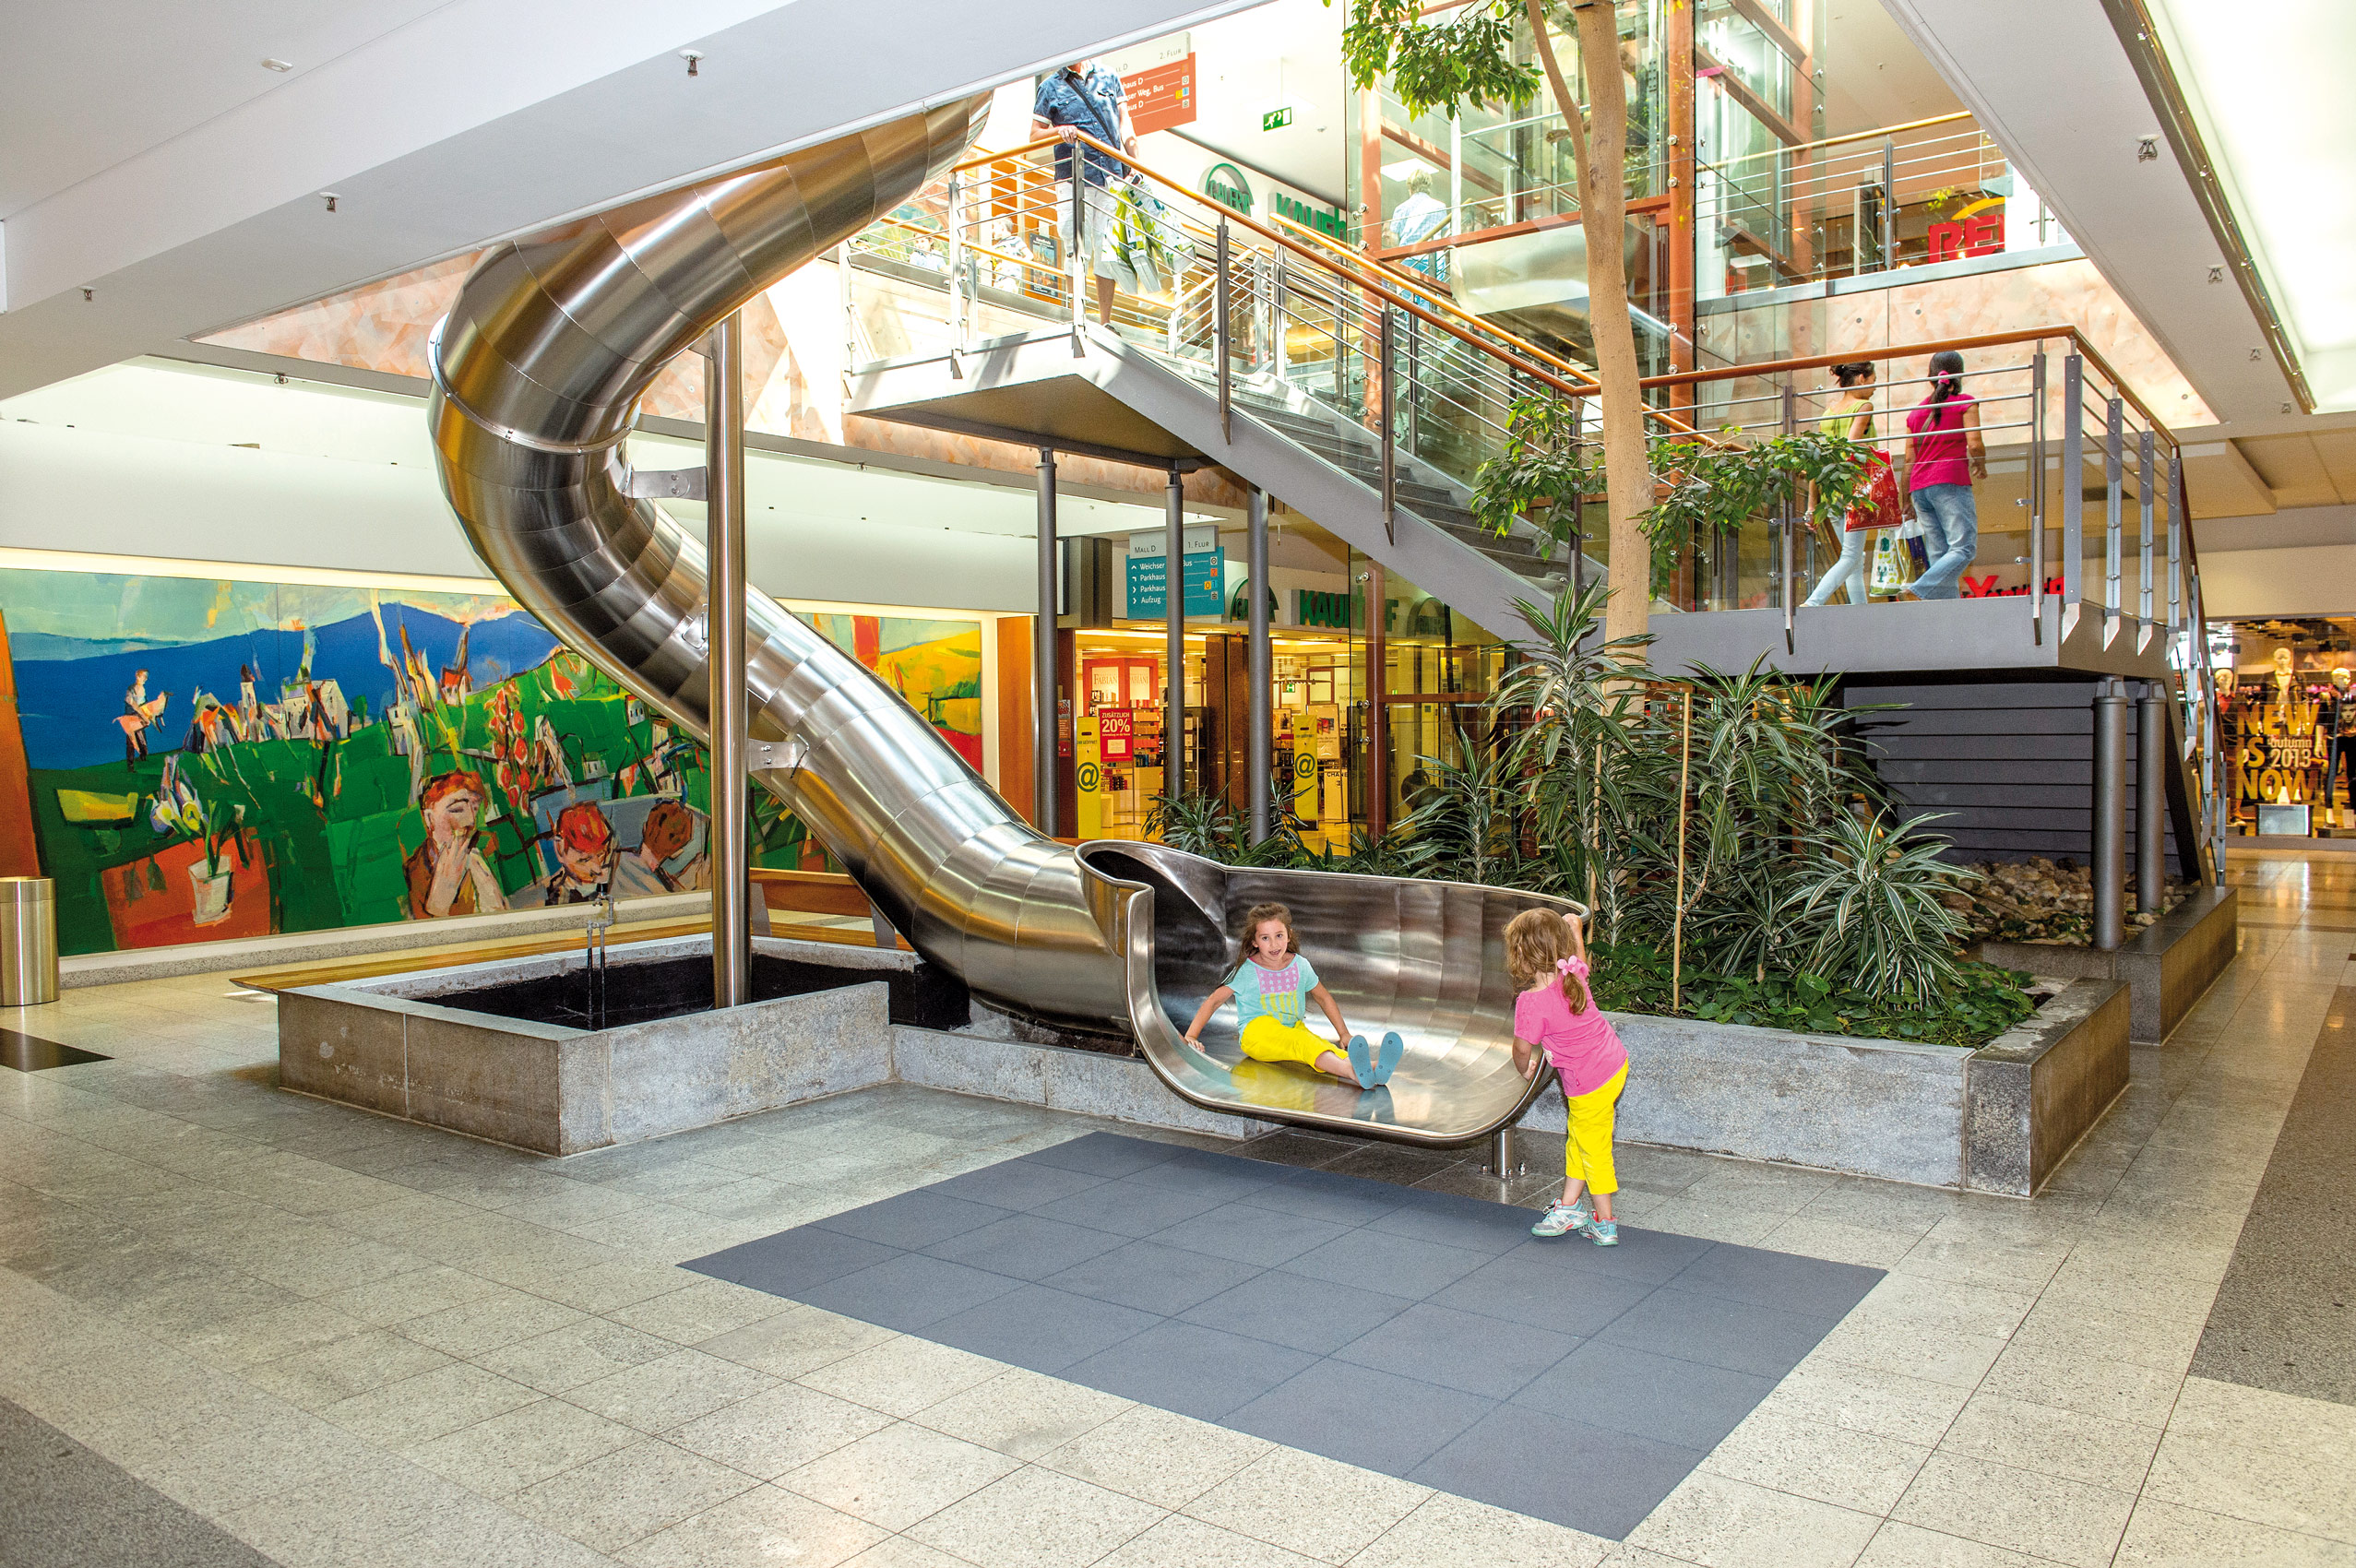 Kinder spass auf atlantics_edelstahlrutschen_einkaufszentrum_regensburg-bayern-_roehren_shoppingcenter_127343